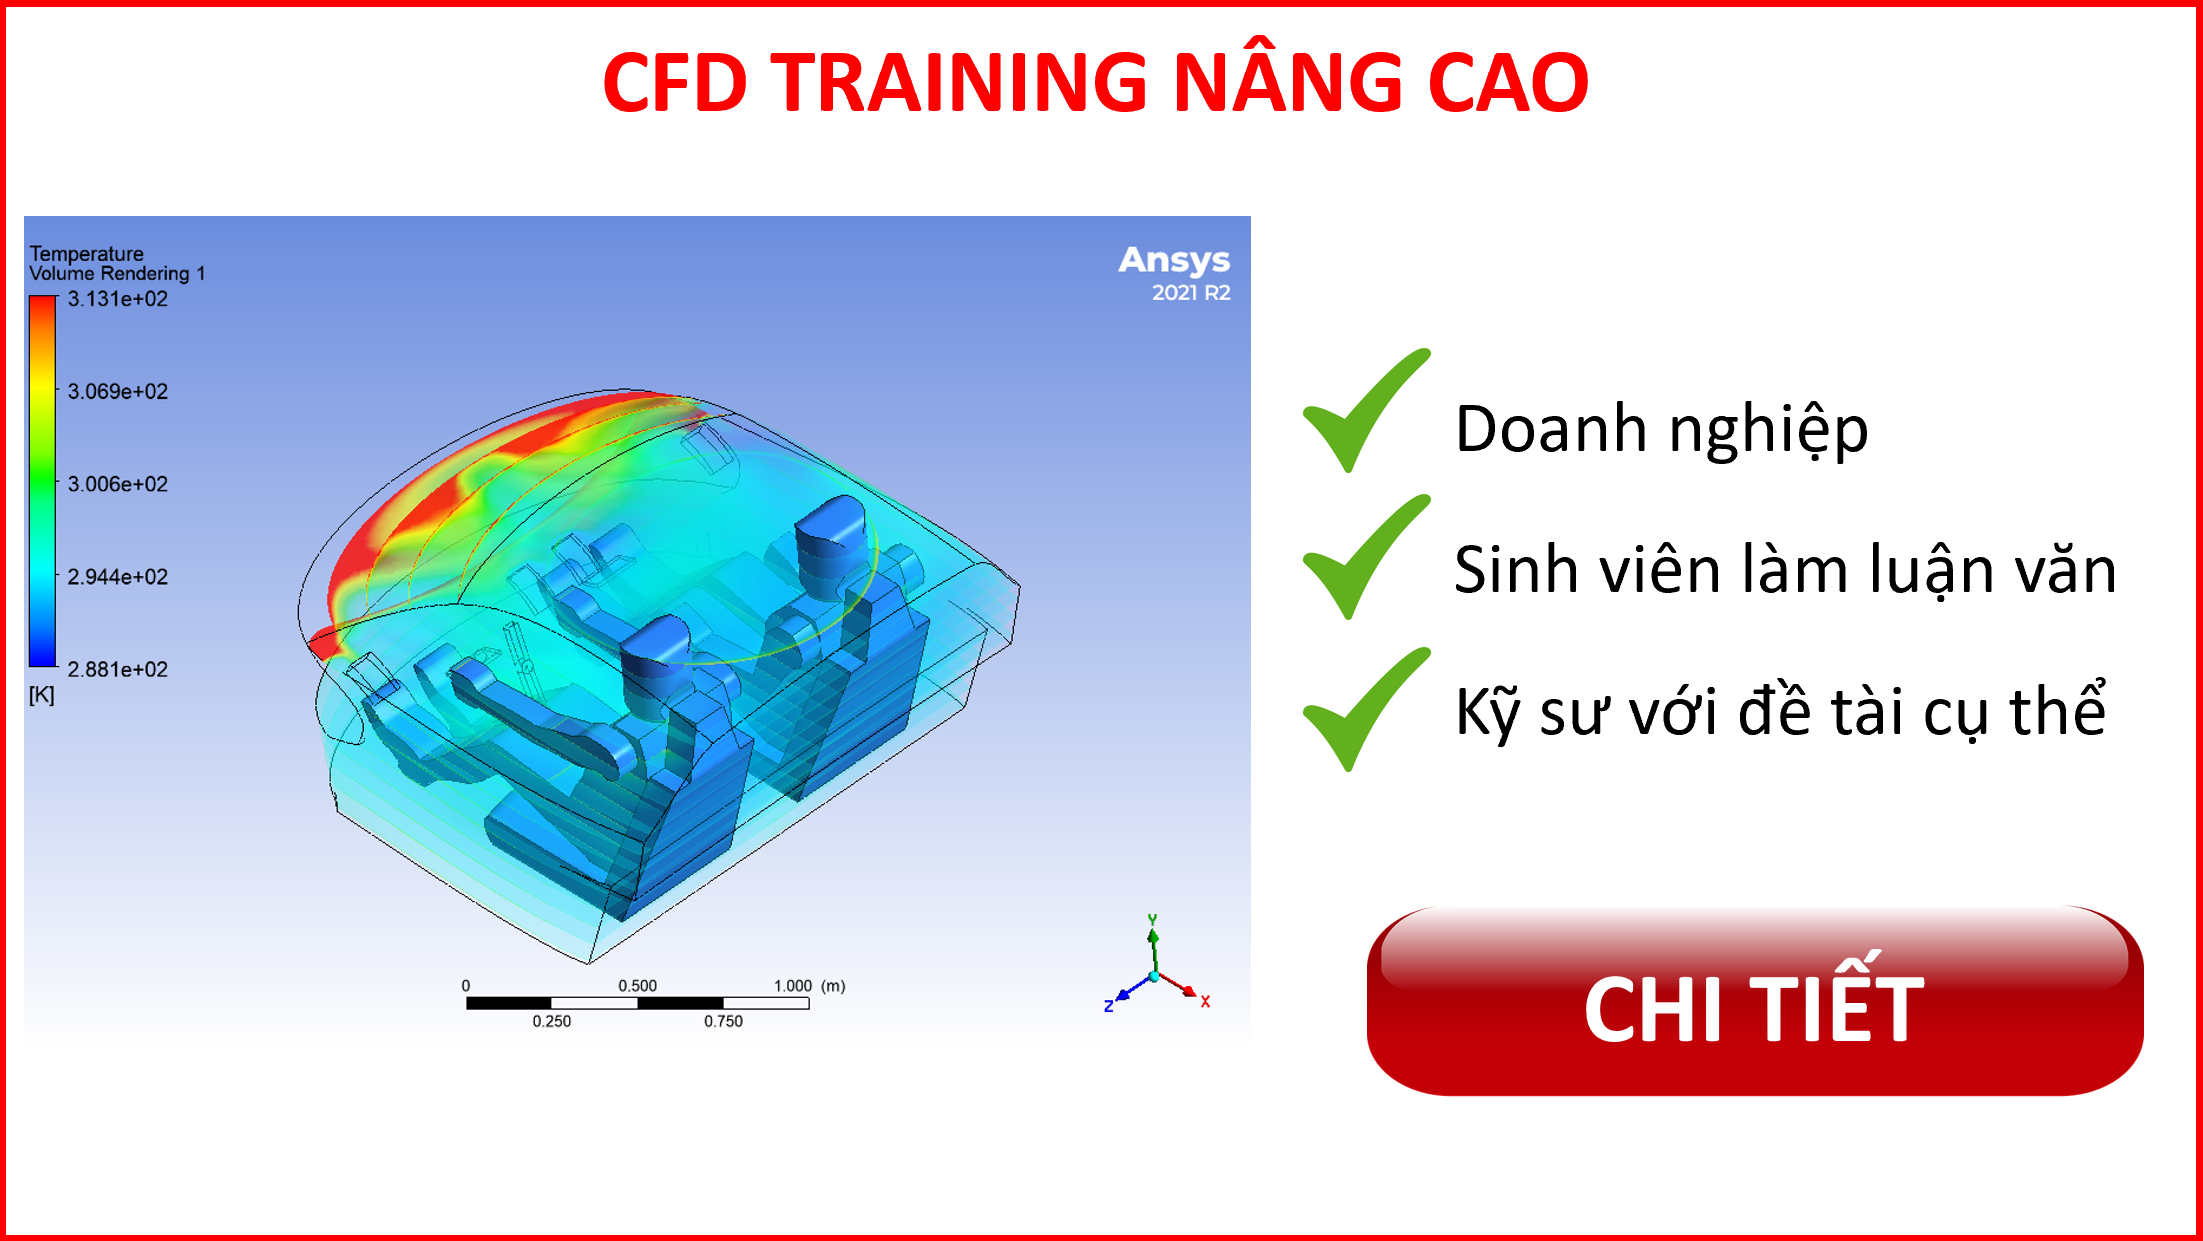 CFD training nâng cao